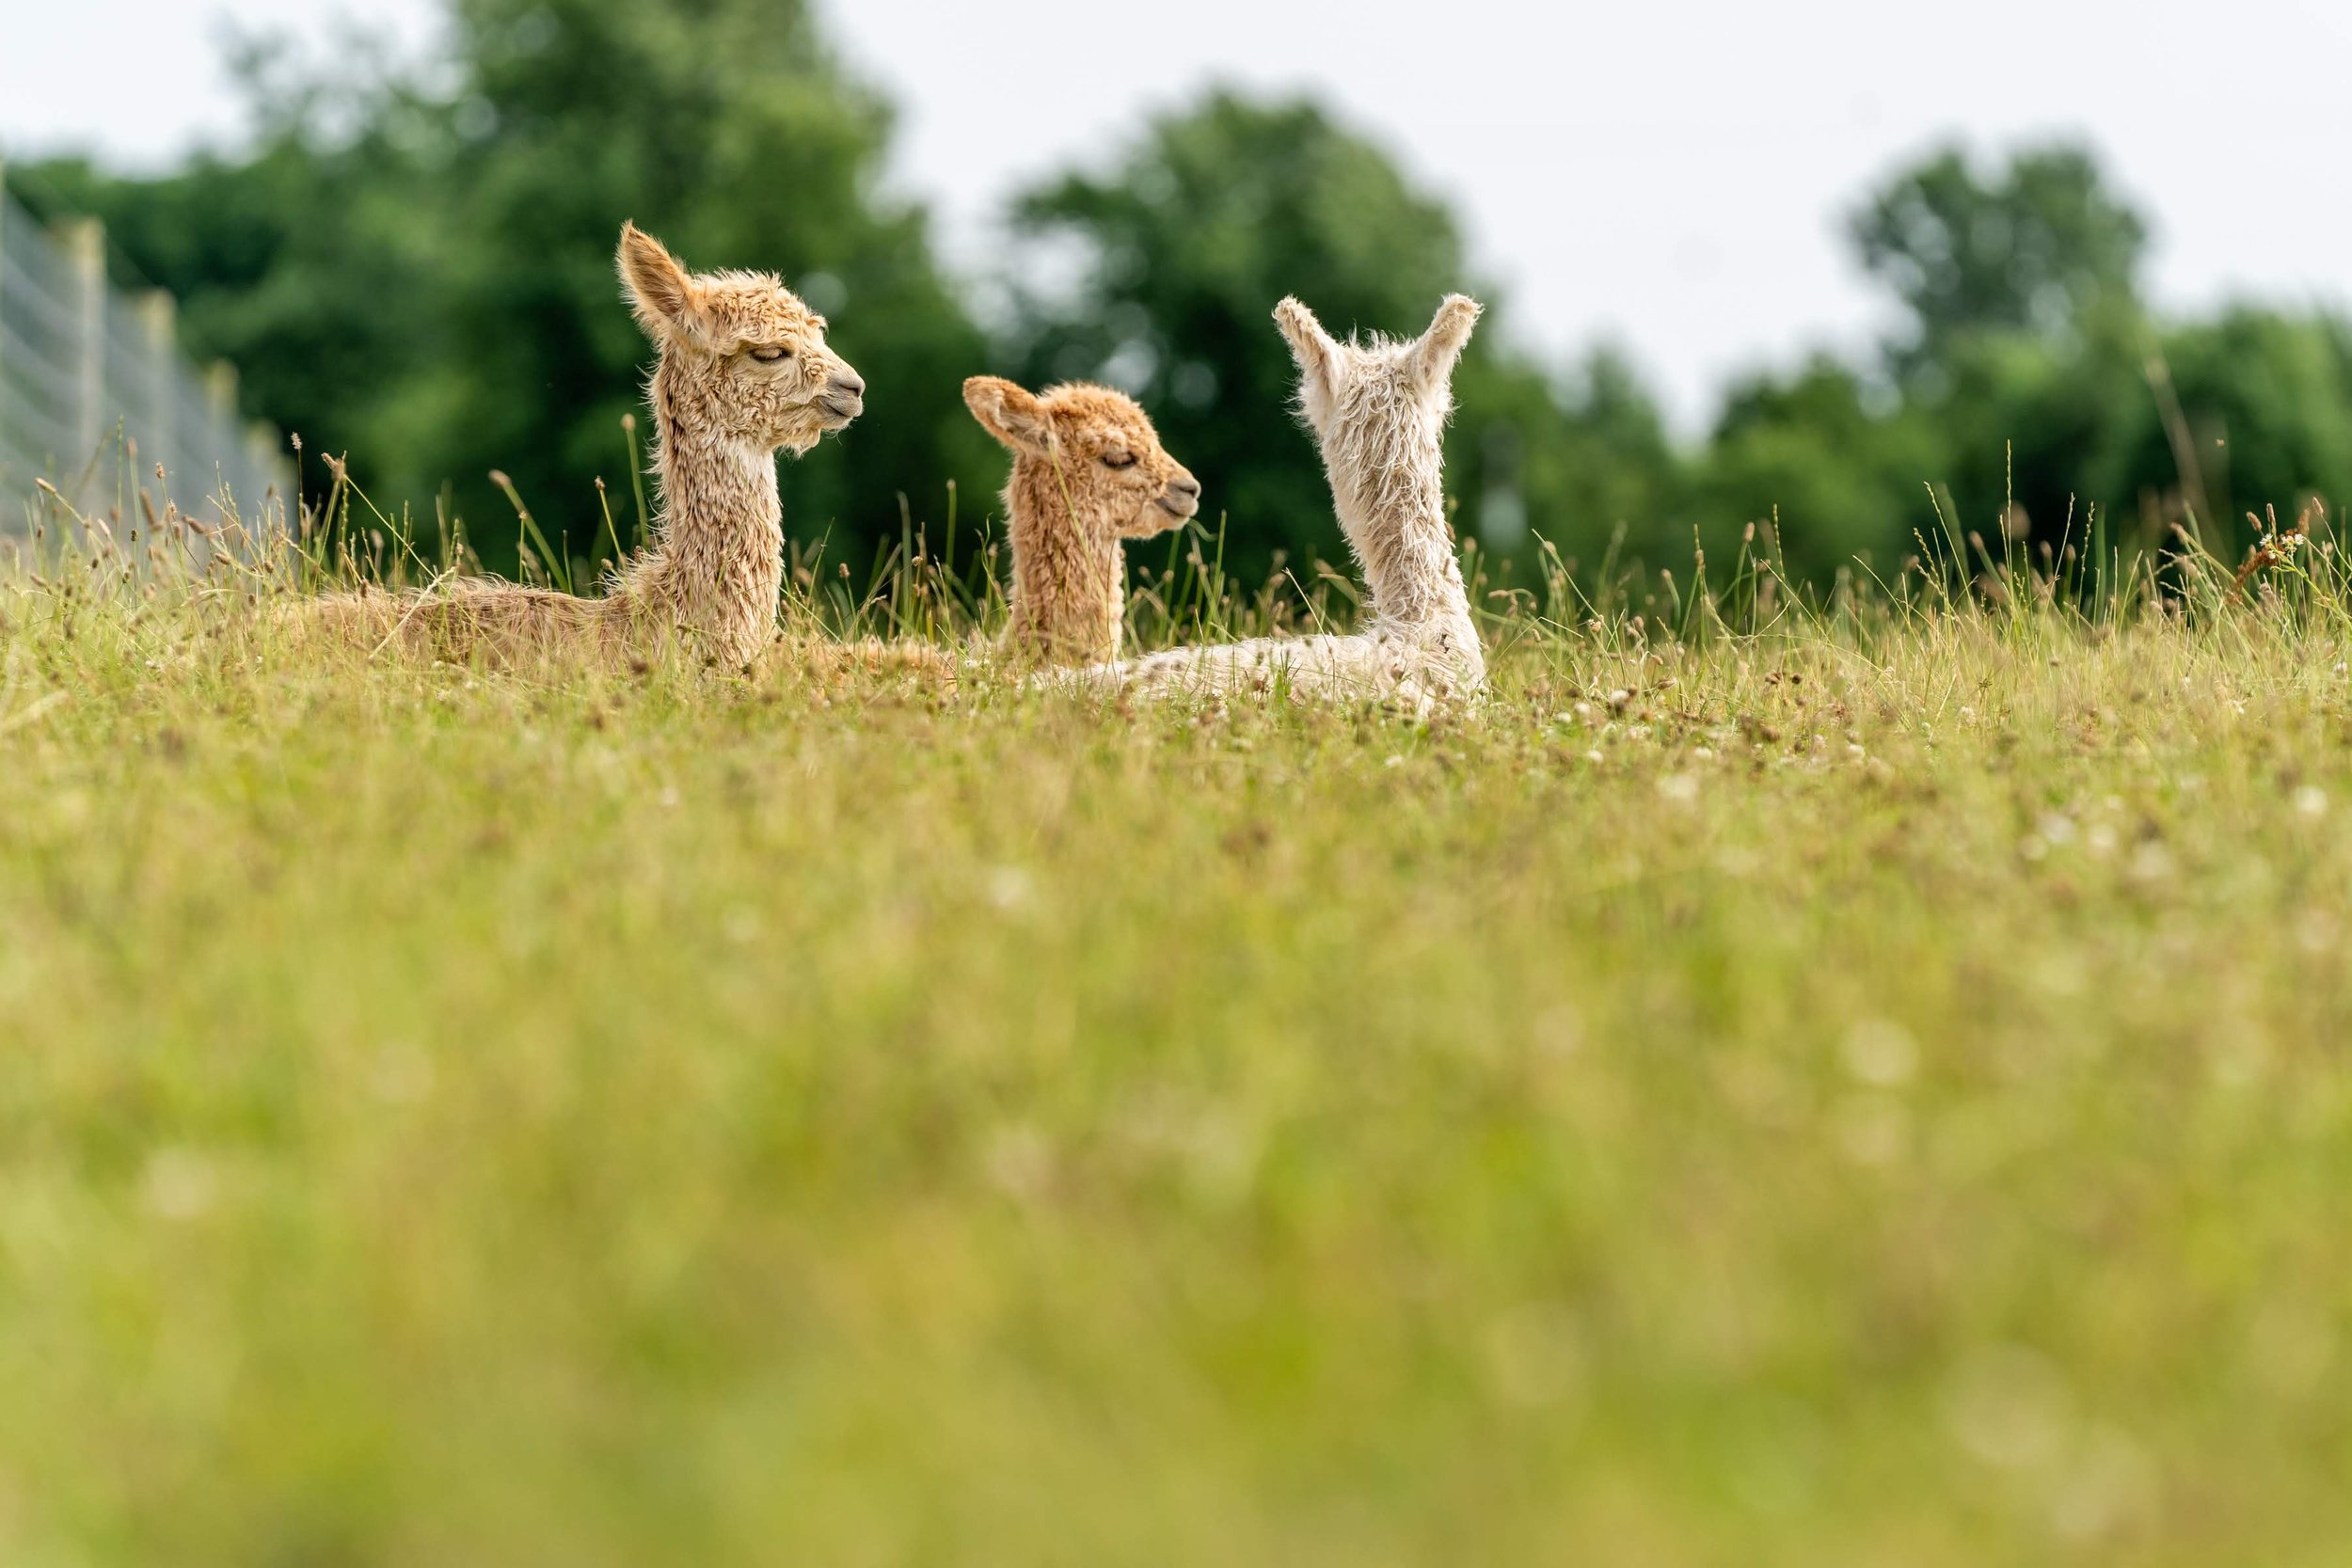  Heritage Farm, Flora, Indiana.Suri Alpacas. 